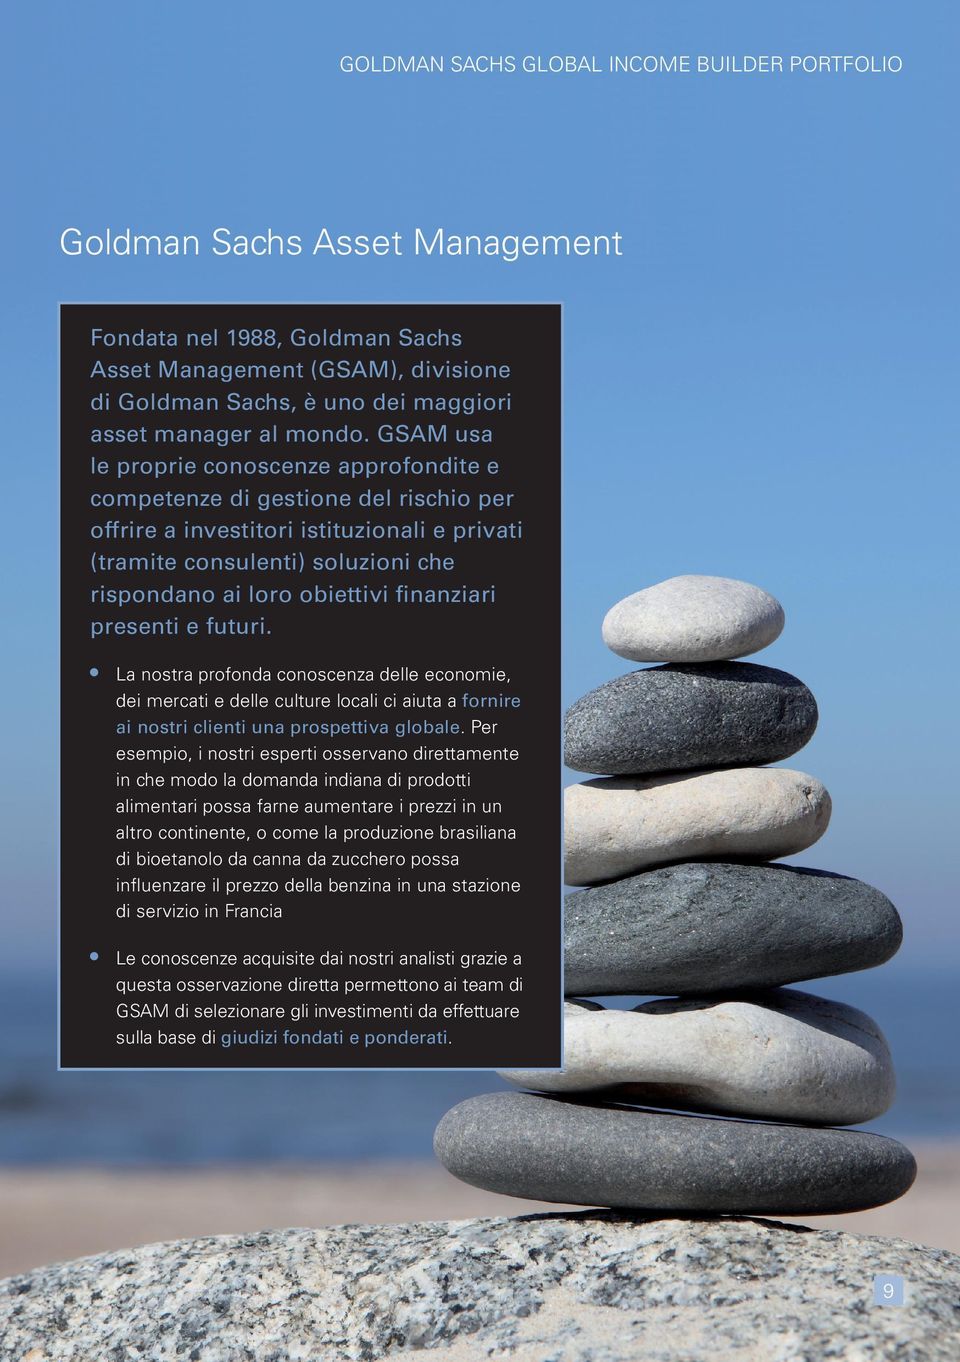 GSAM usa le proprie conoscenze approfondite e competenze di gestione del rischio per offrire a investitori istituzionali e privati (tramite consulenti) soluzioni che rispondano ai loro obiettivi